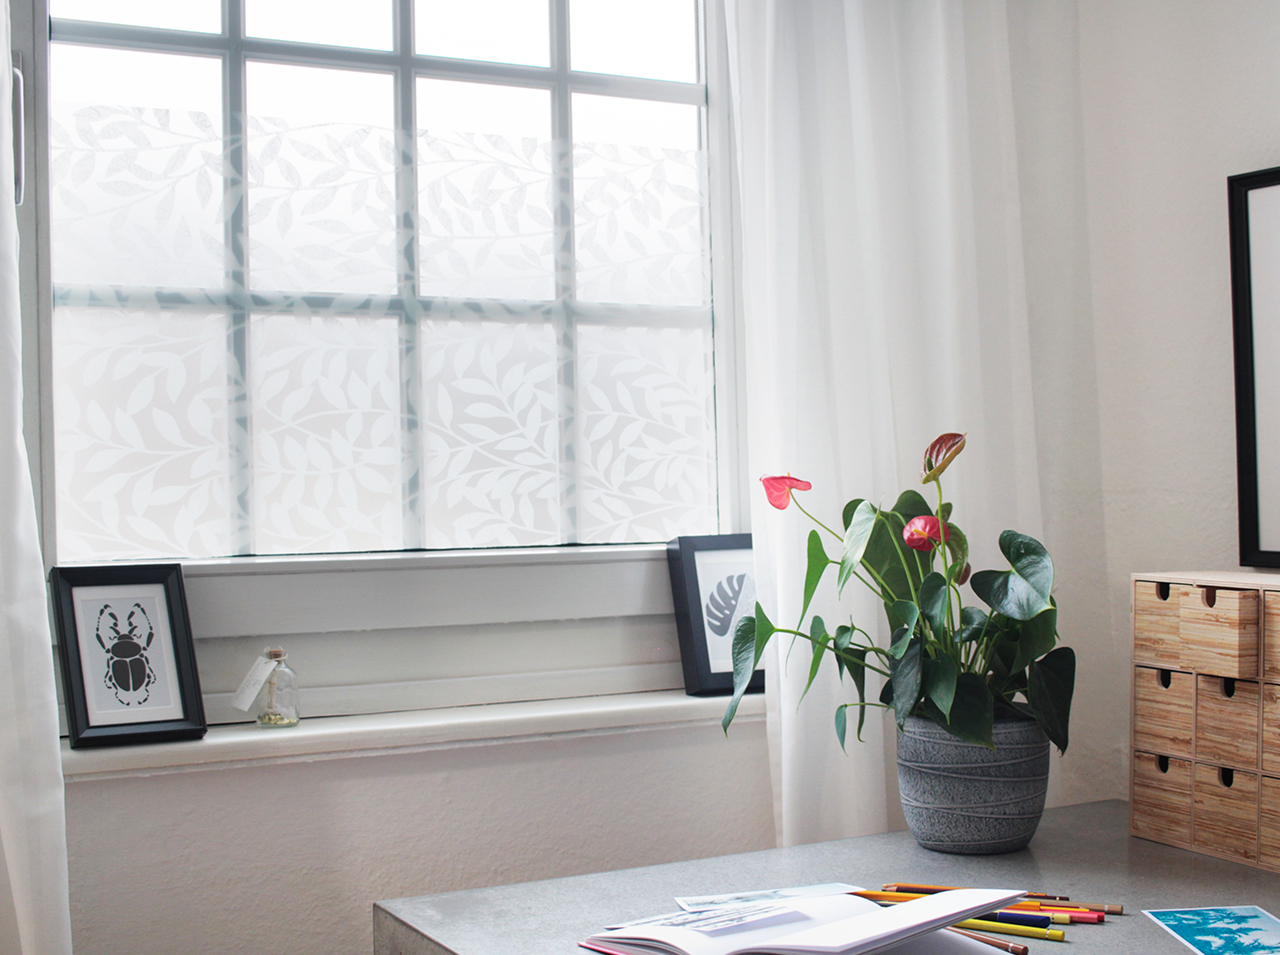 Powierzchnia okna dla skutecznej ochrony prywatności pokryta folią okienną d-c-fix® static premium Jane w nowoczesnym wzorze liściastych gałązek.